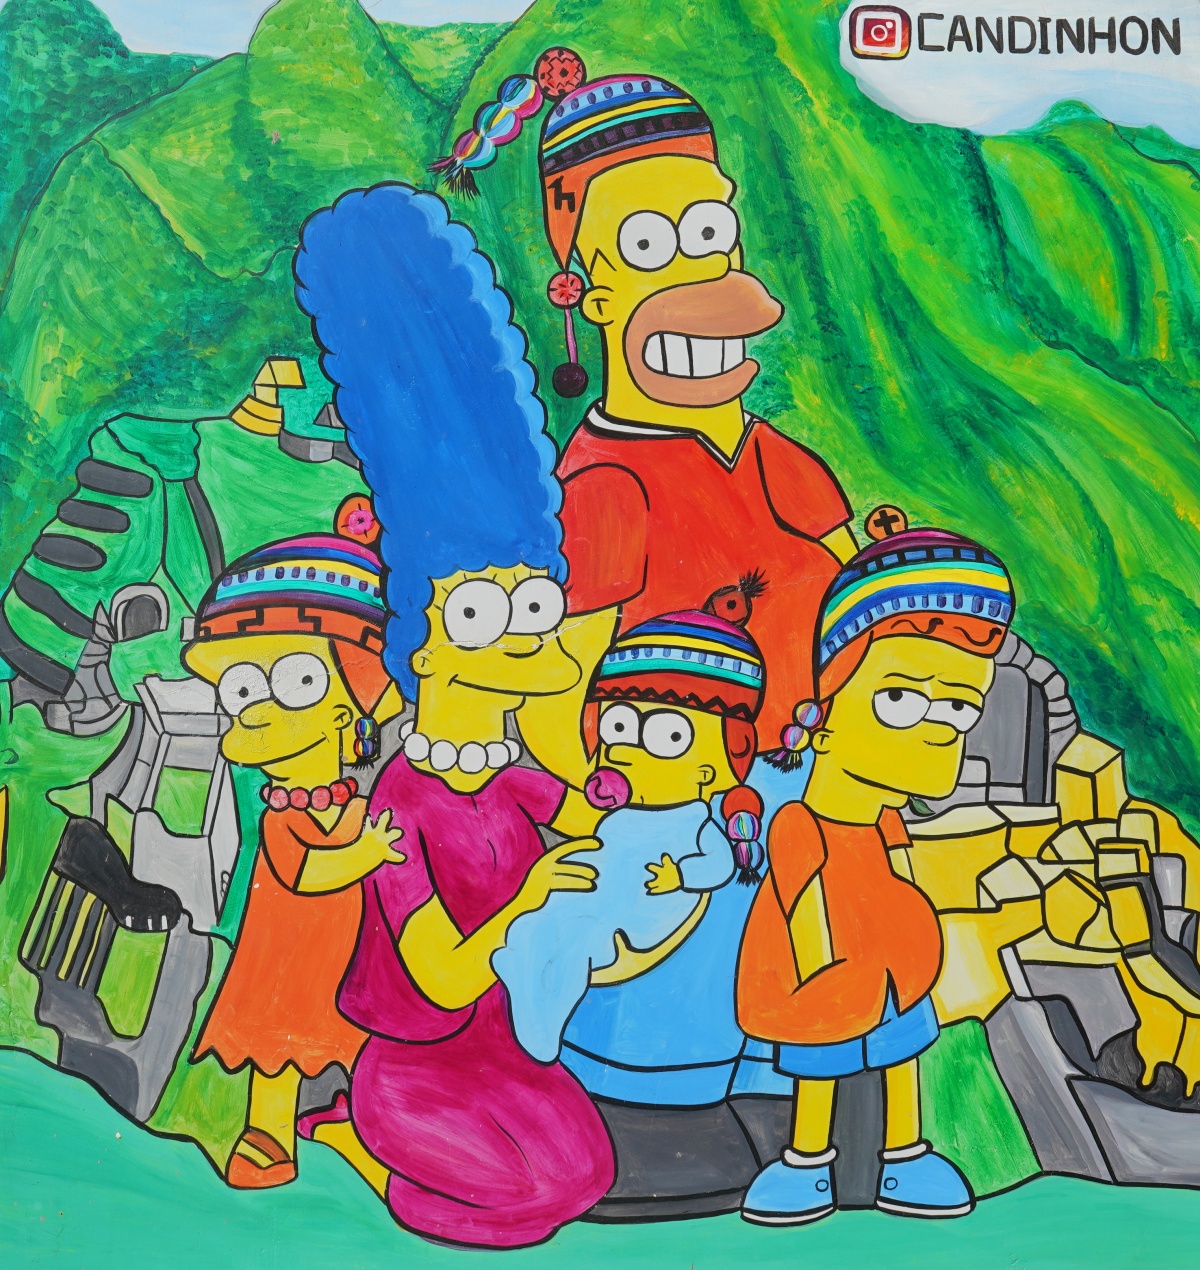 Waren auch schon in Peru: Die Simpsons. (Wandbild in Ollantaytambo; Lizenz: Panoramafreiheit)